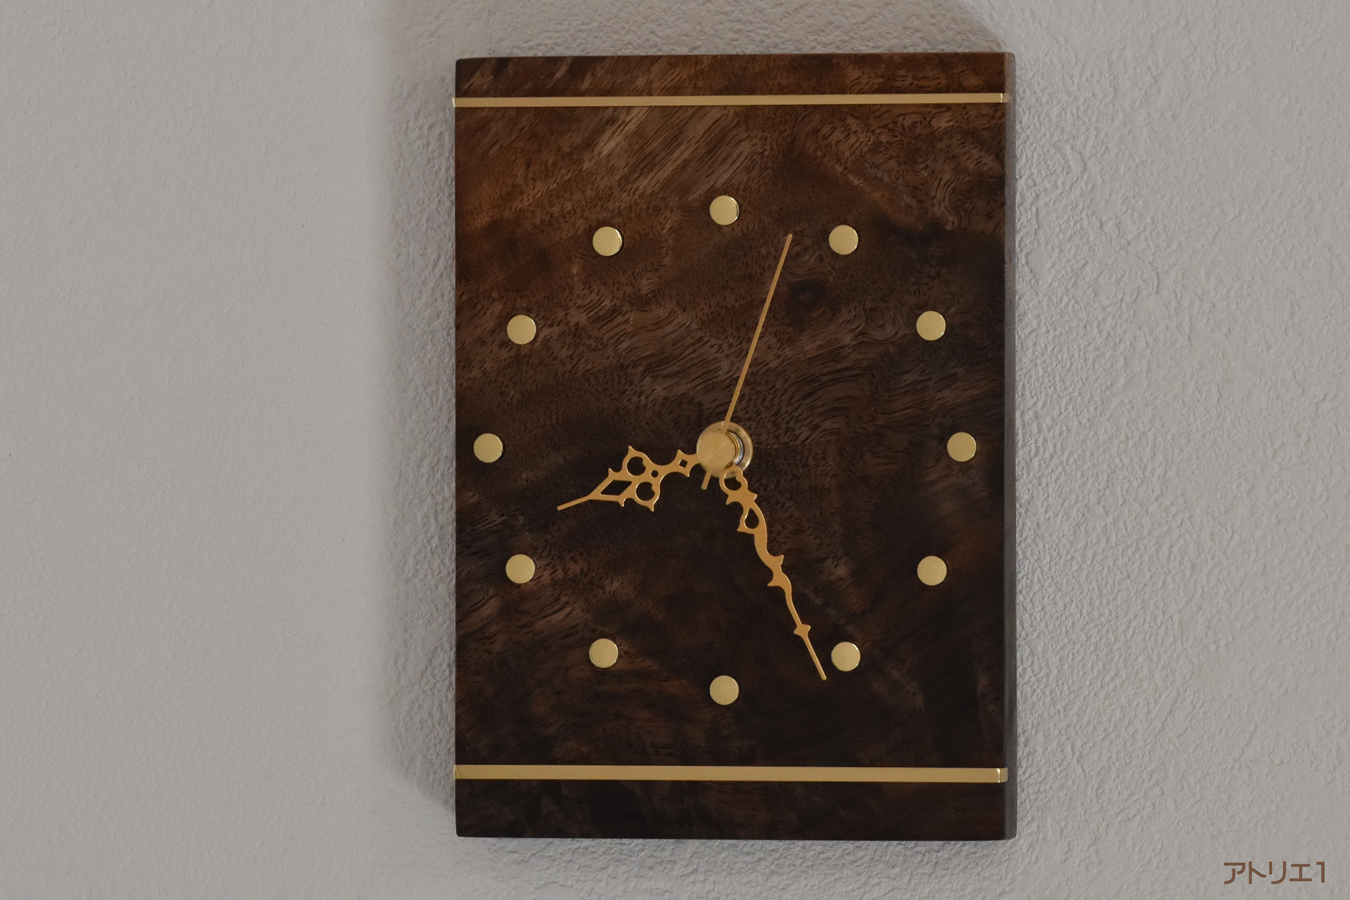 波状・カーリーの木目に立ち昇るような杢があるブラックウォルナットを長方形に切り出し、磨き上げた真鍮を上下に配したカードのキングをイメージして作ったコンパクトながら重厚感のある掛け時計です。